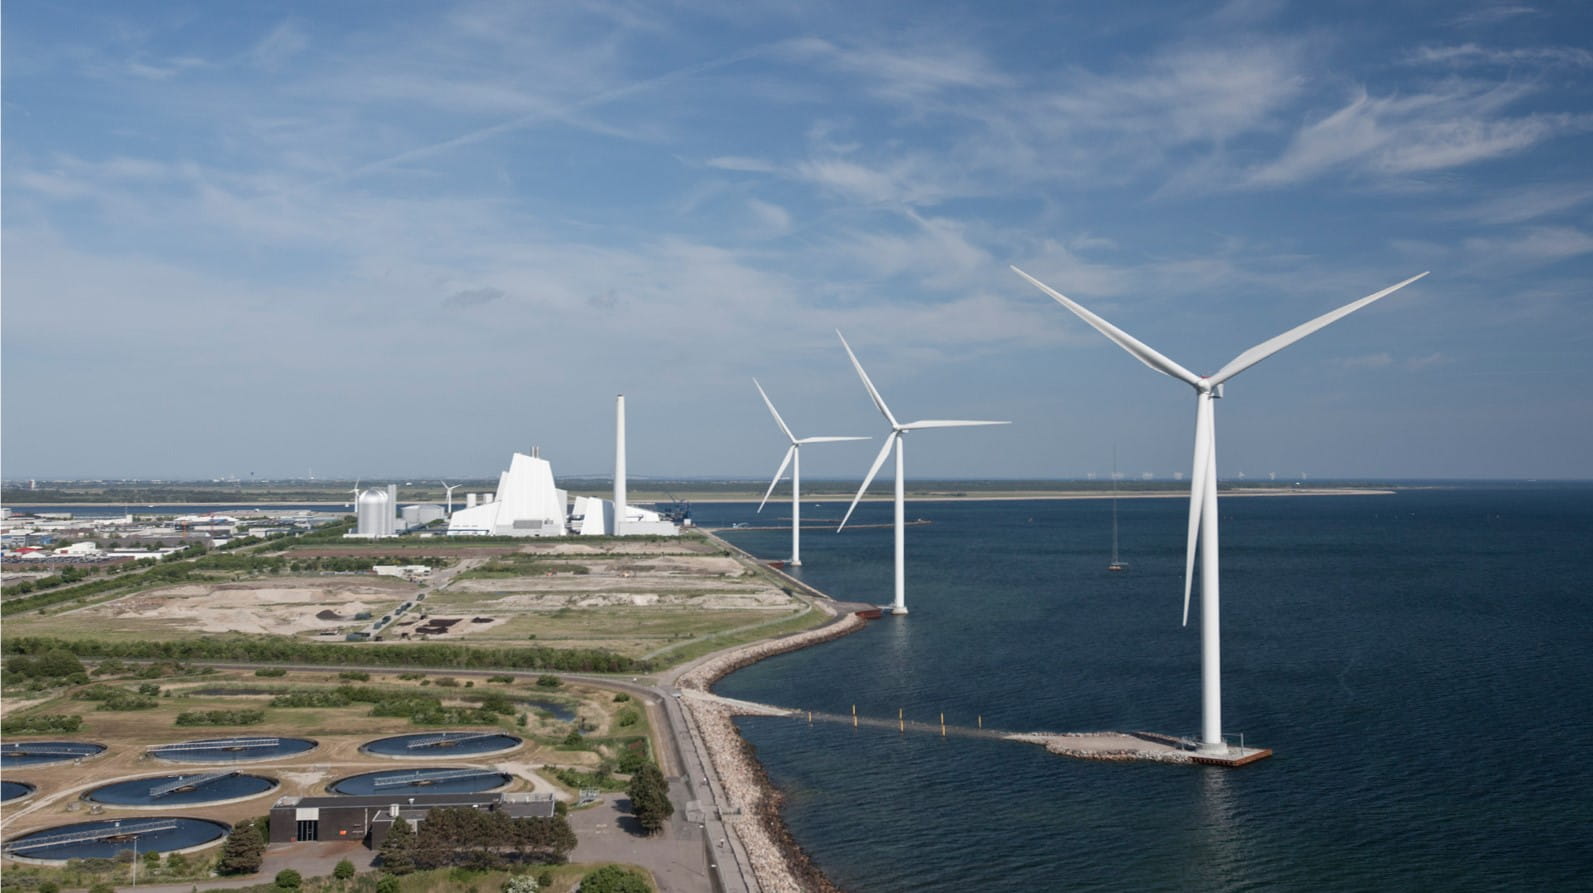 Tre turbine eoliche Ørsted accanto a una centrale elettrica a idrogeno rinnovabile.